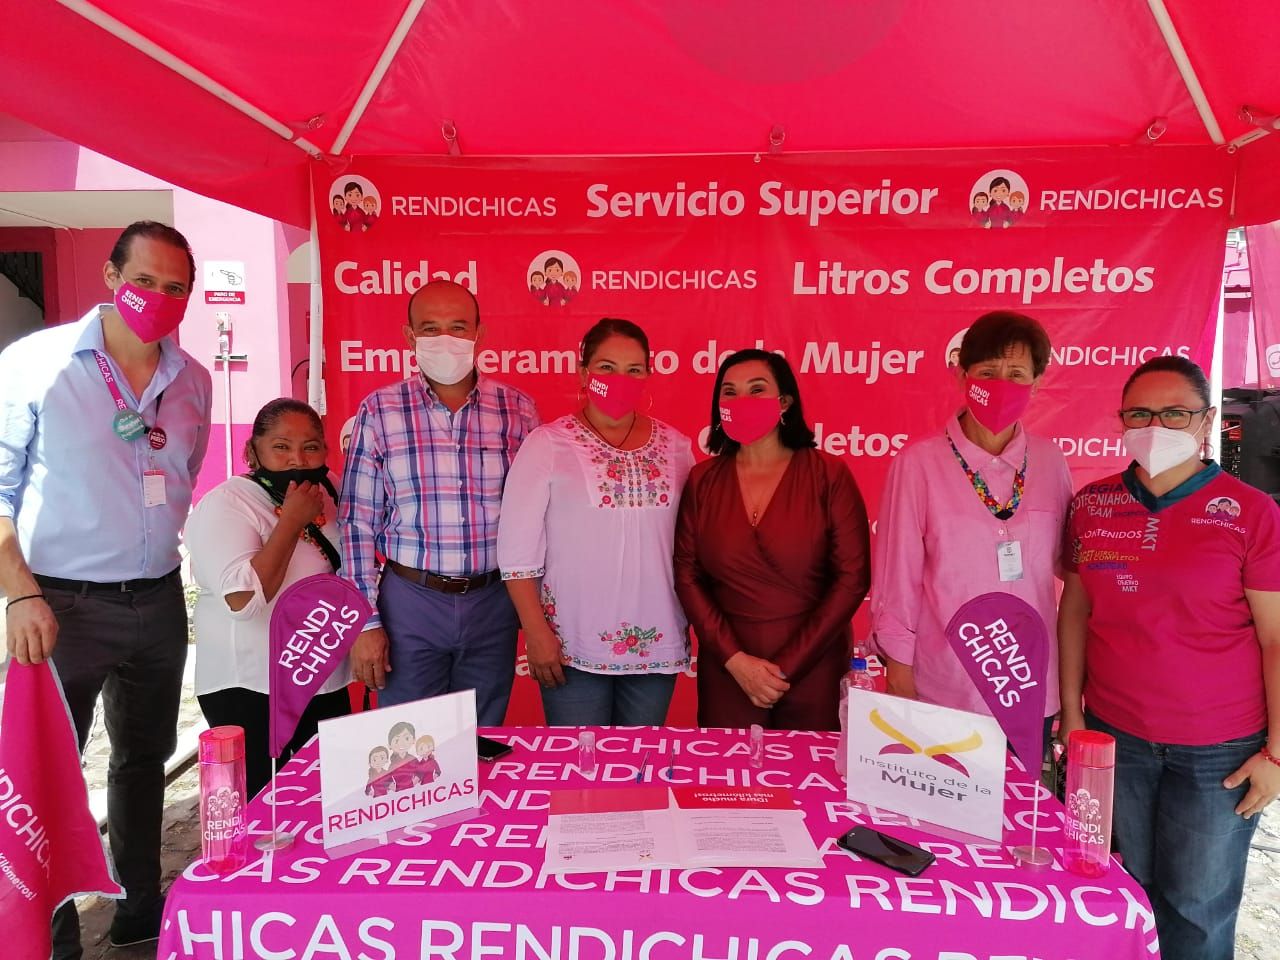 IMMUJER y RENDI CHICAS firman
convenio de colaboración: Lulú Ibarra
